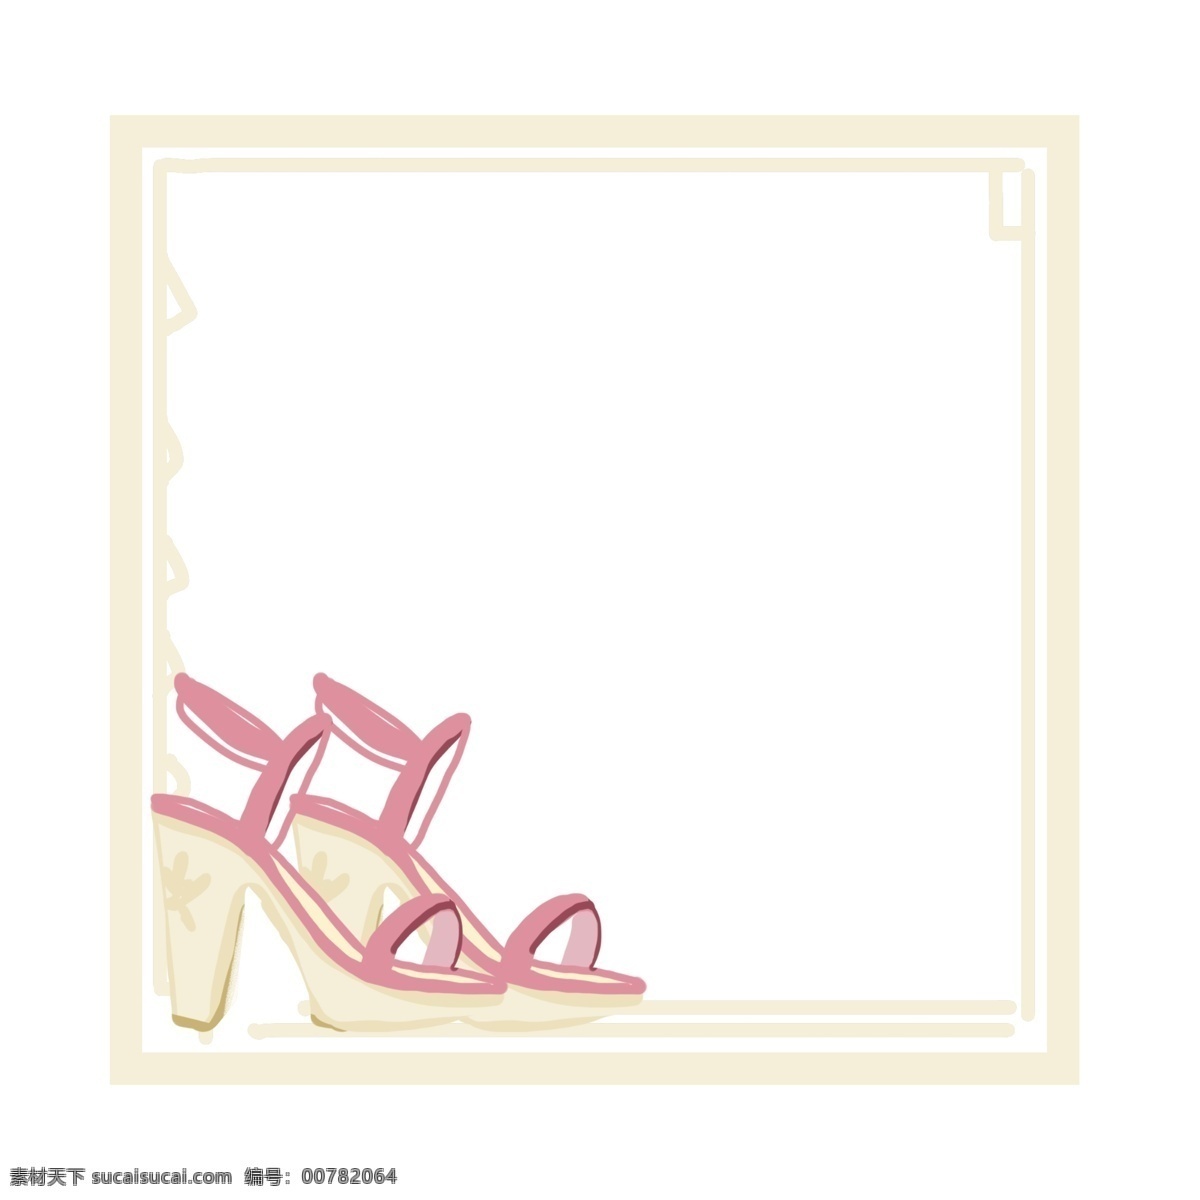 粉色 高跟鞋 黄色 边框 粉色高跟鞋 凉鞋 浅粉色 黄色边框 清新简约 时尚现代 手绘小物 穿衣搭配 女性潮流